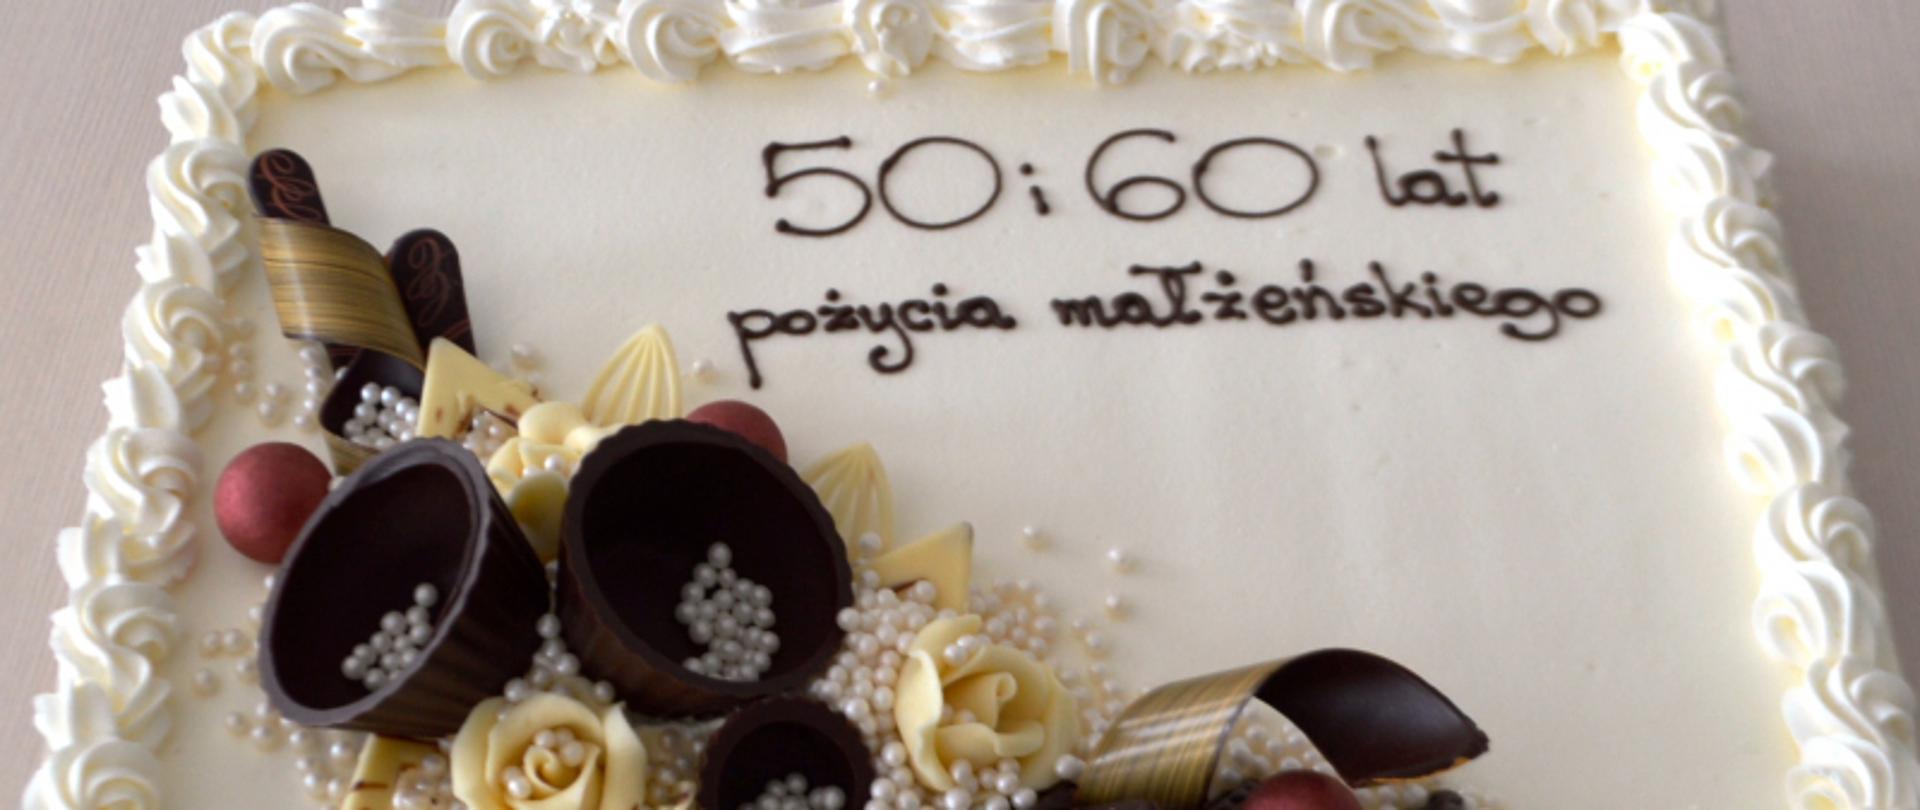 Tort z napisem 50 i 60 lat pożycia małżeńskiego